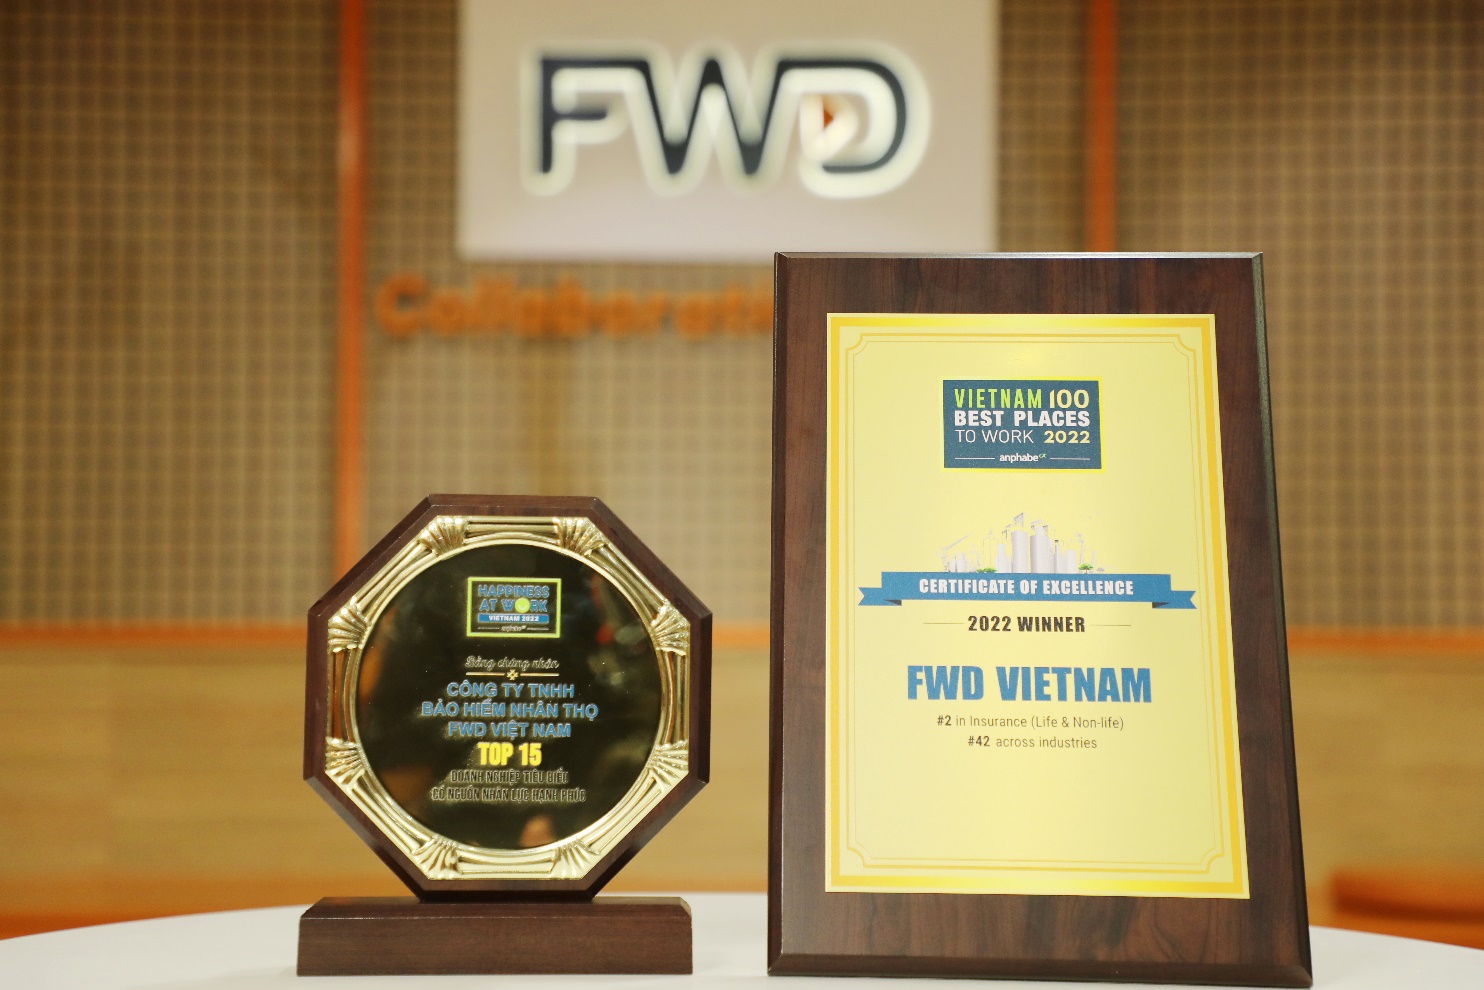 FWD liên tục được vinh danh tại nhiều giải thưởng uy tín về nhân sự trong nước và quốc tế - Ảnh 2.